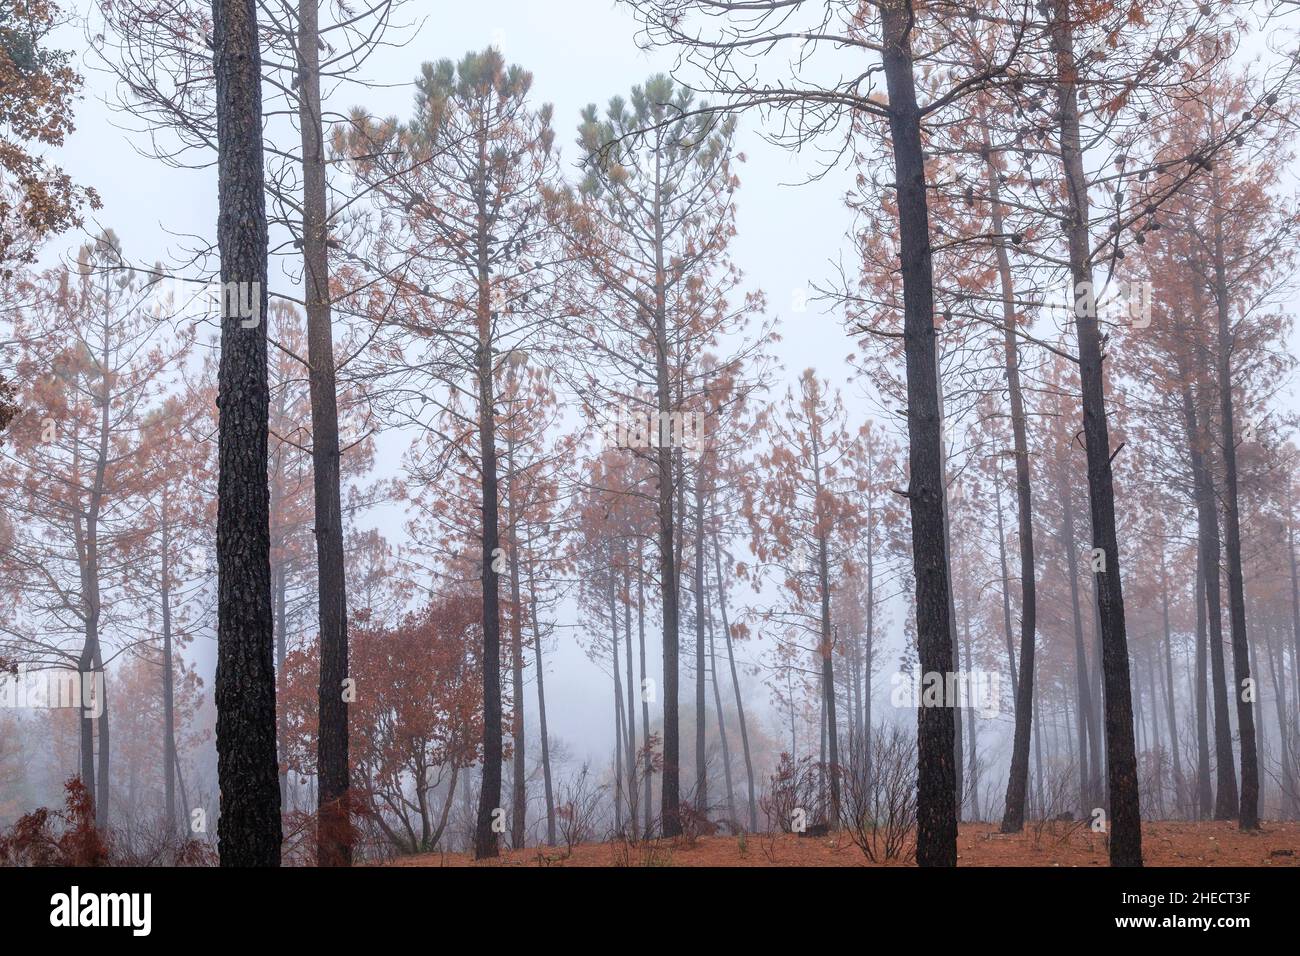 France, Var, Le Cannet des Maures, Reserve naturelle nationale de la plaine des Maures (Plaine des Maures National Natural Reserve), fire of the month Stock Photo